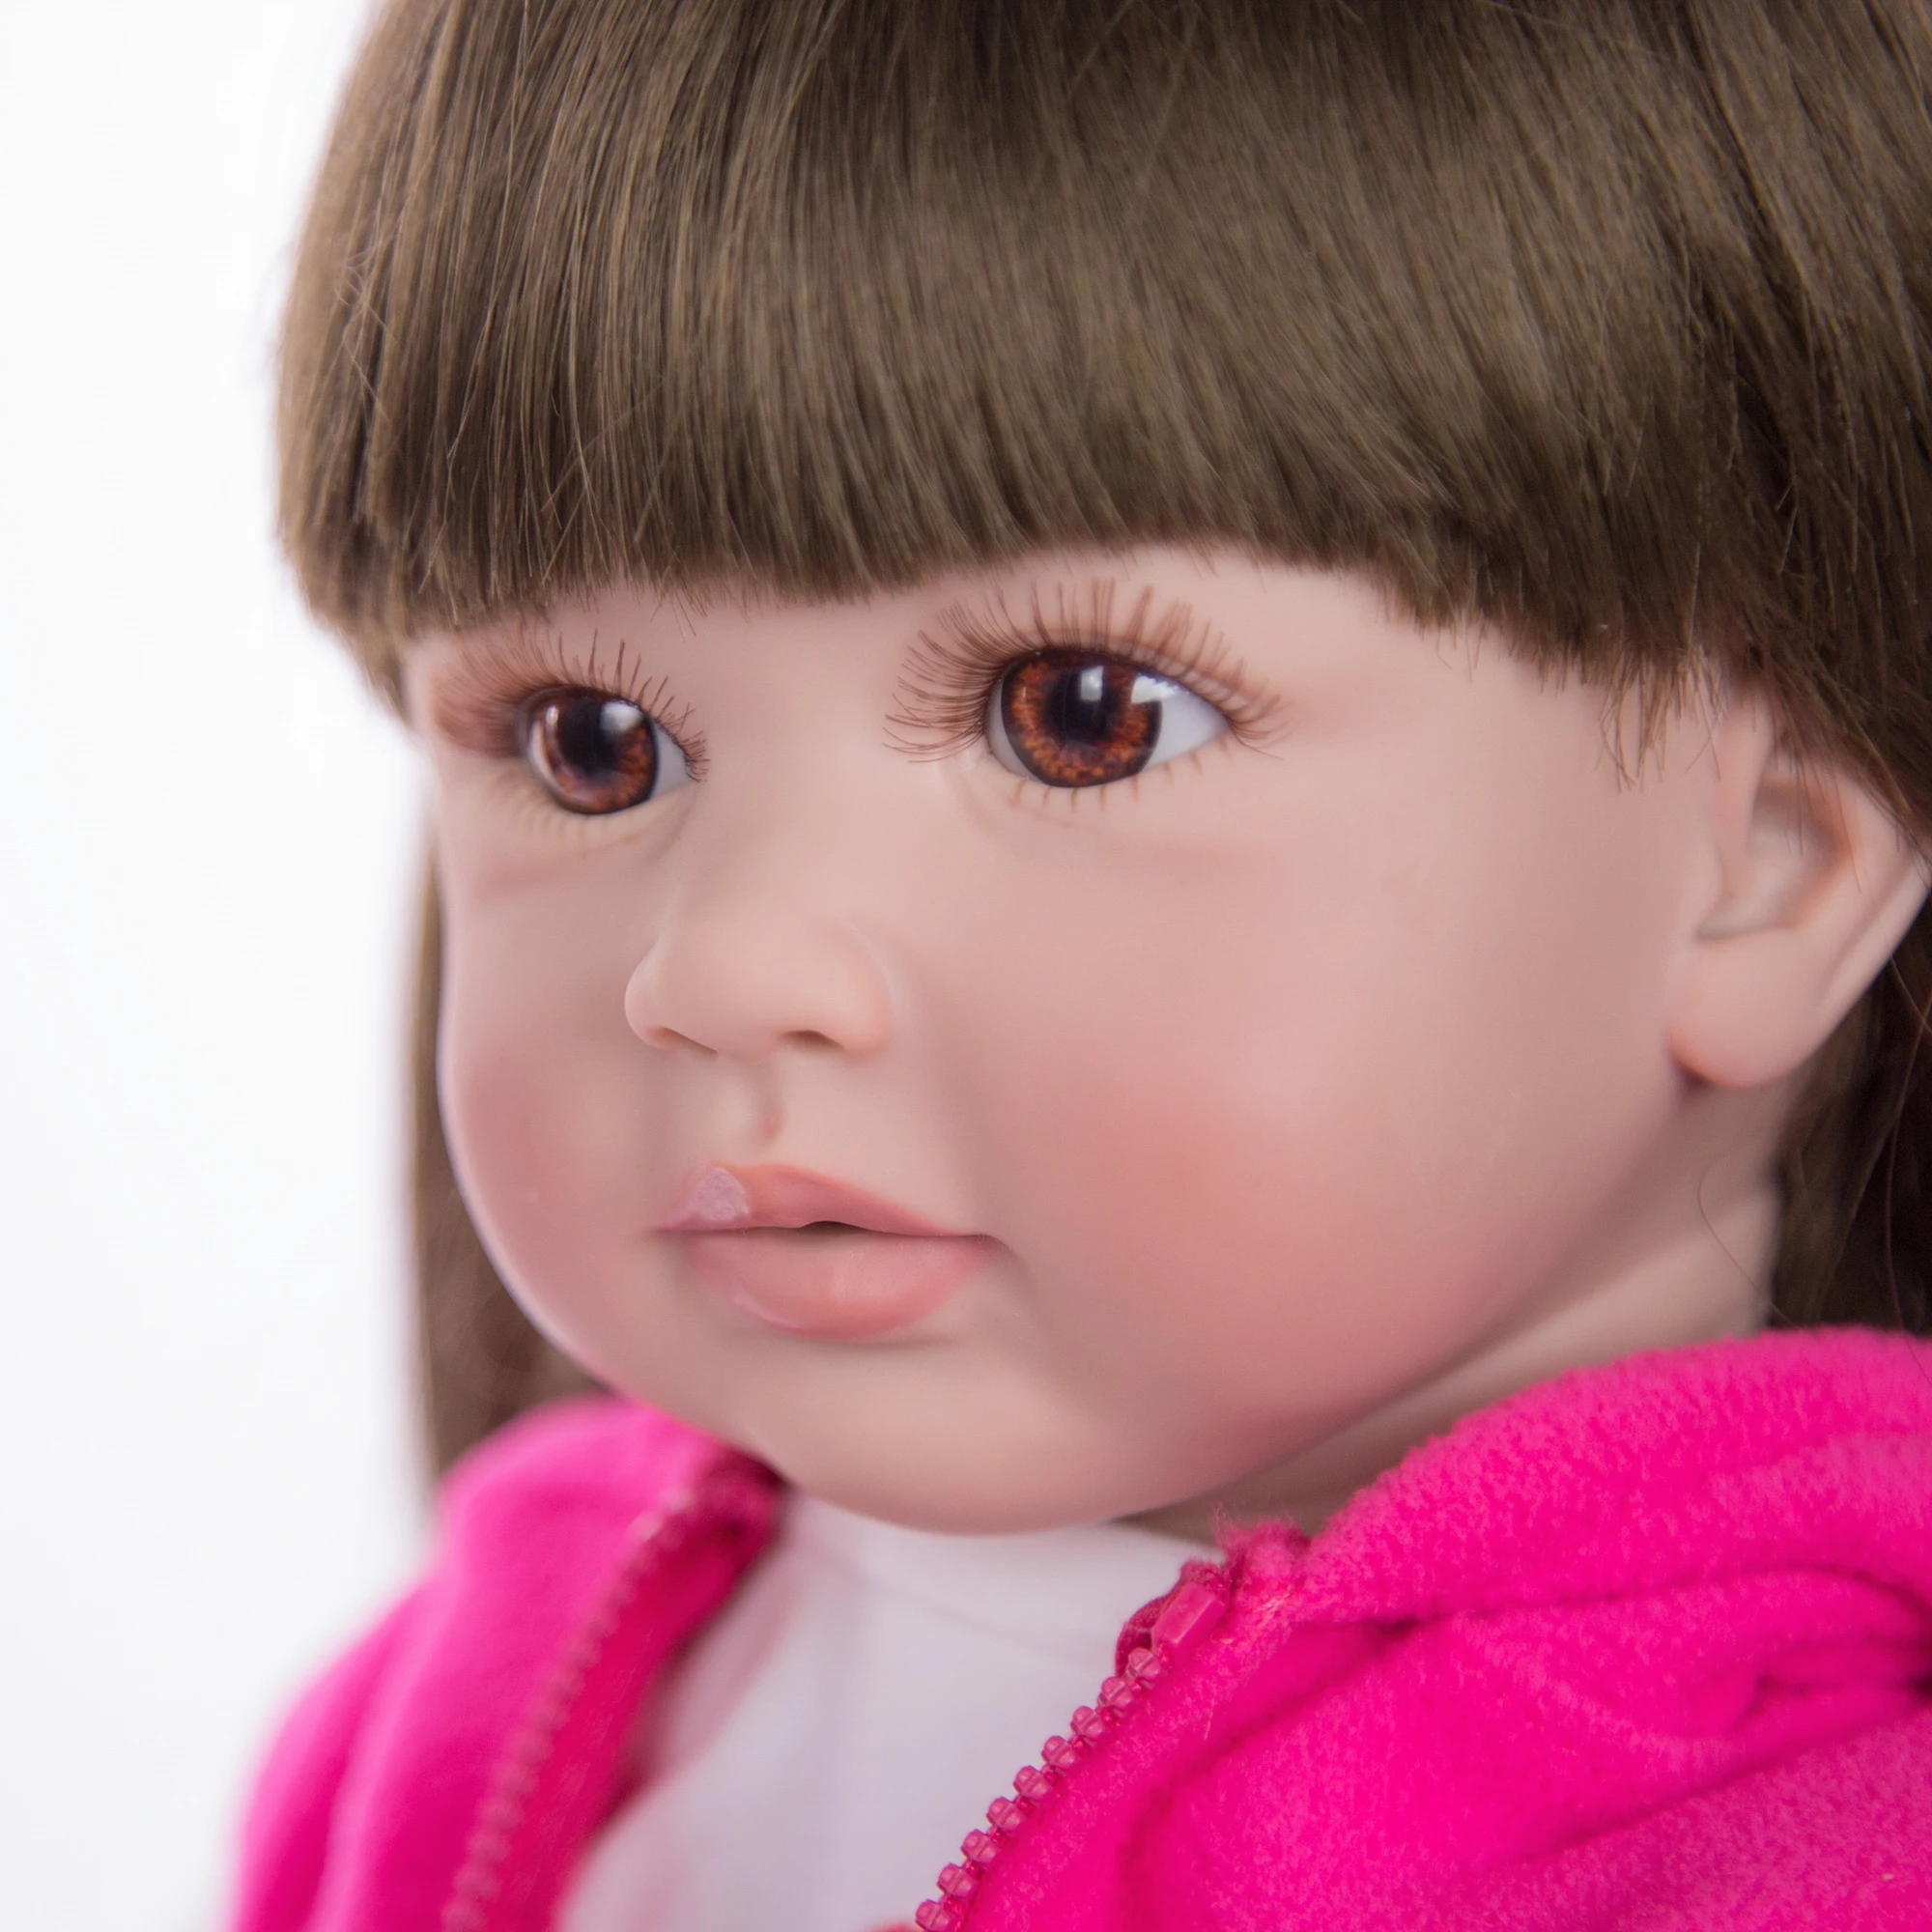 Горячая Распродажа, 24 дюймовые куклы-Реборн, Модные Силиконовые Мягкие реалистичные куклы для девочек, детские куклы, Этнические куклы, подарки на день детей